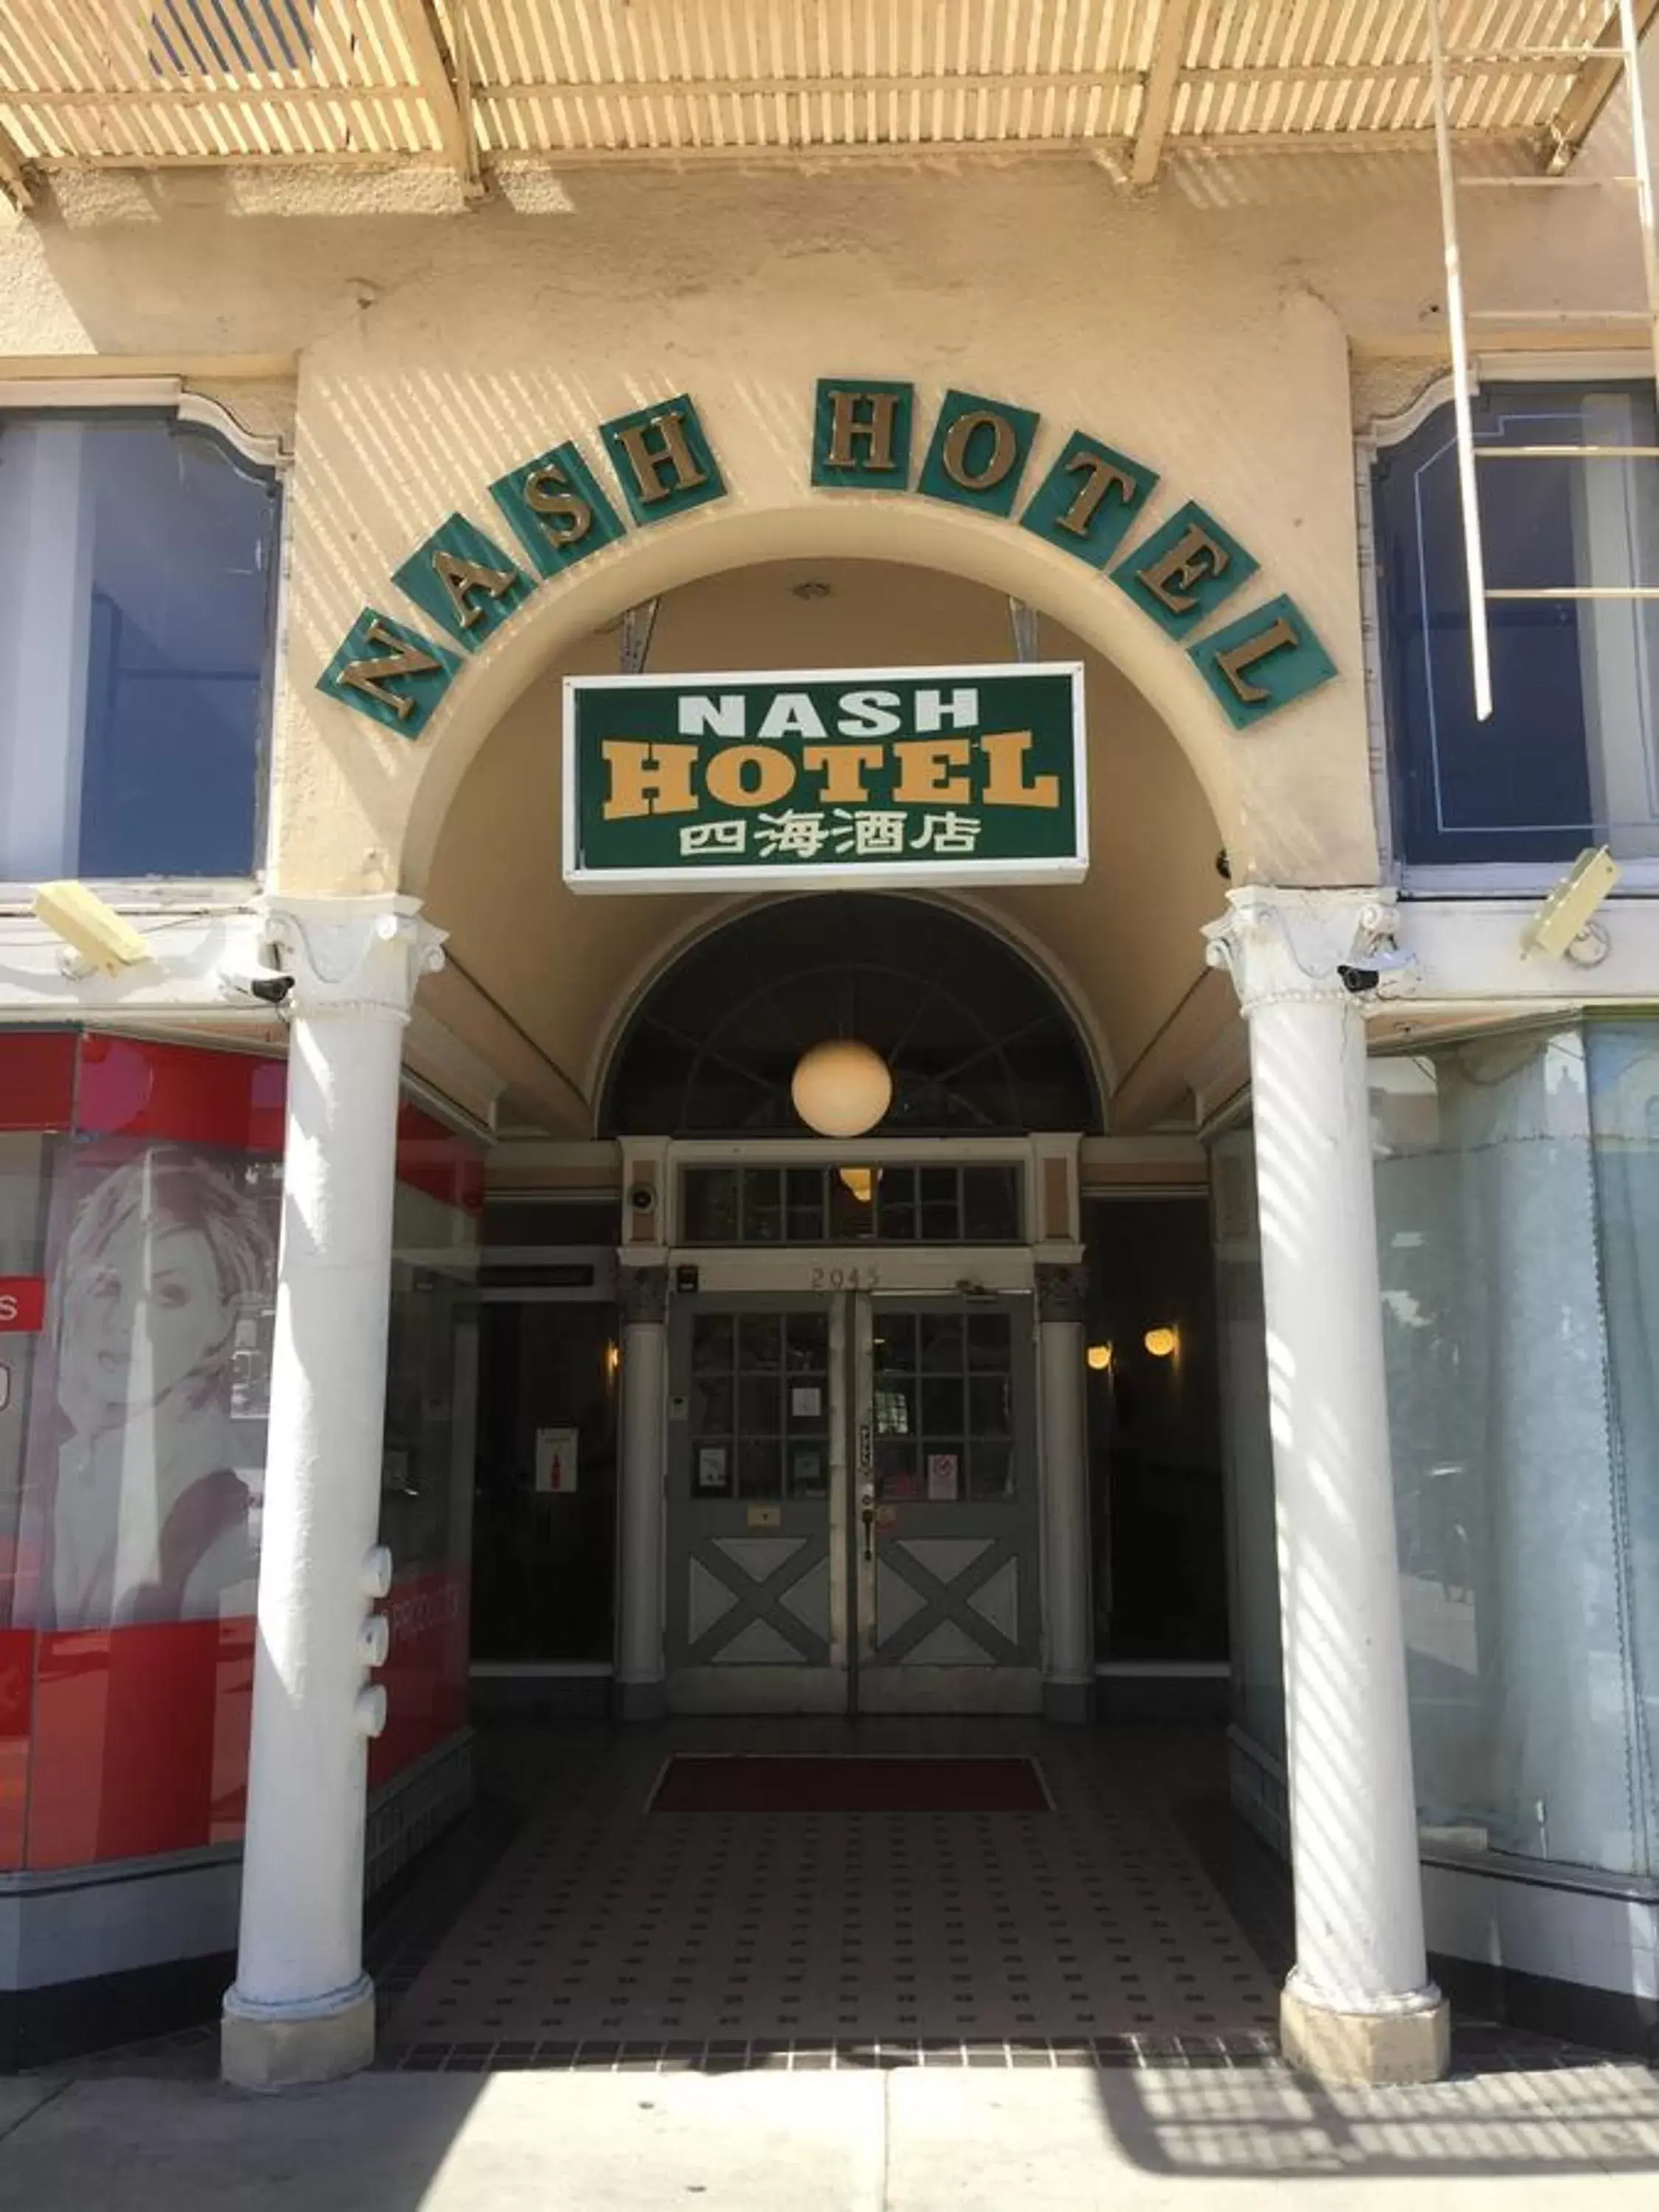 Property building, Facade/Entrance in Nash Hotel